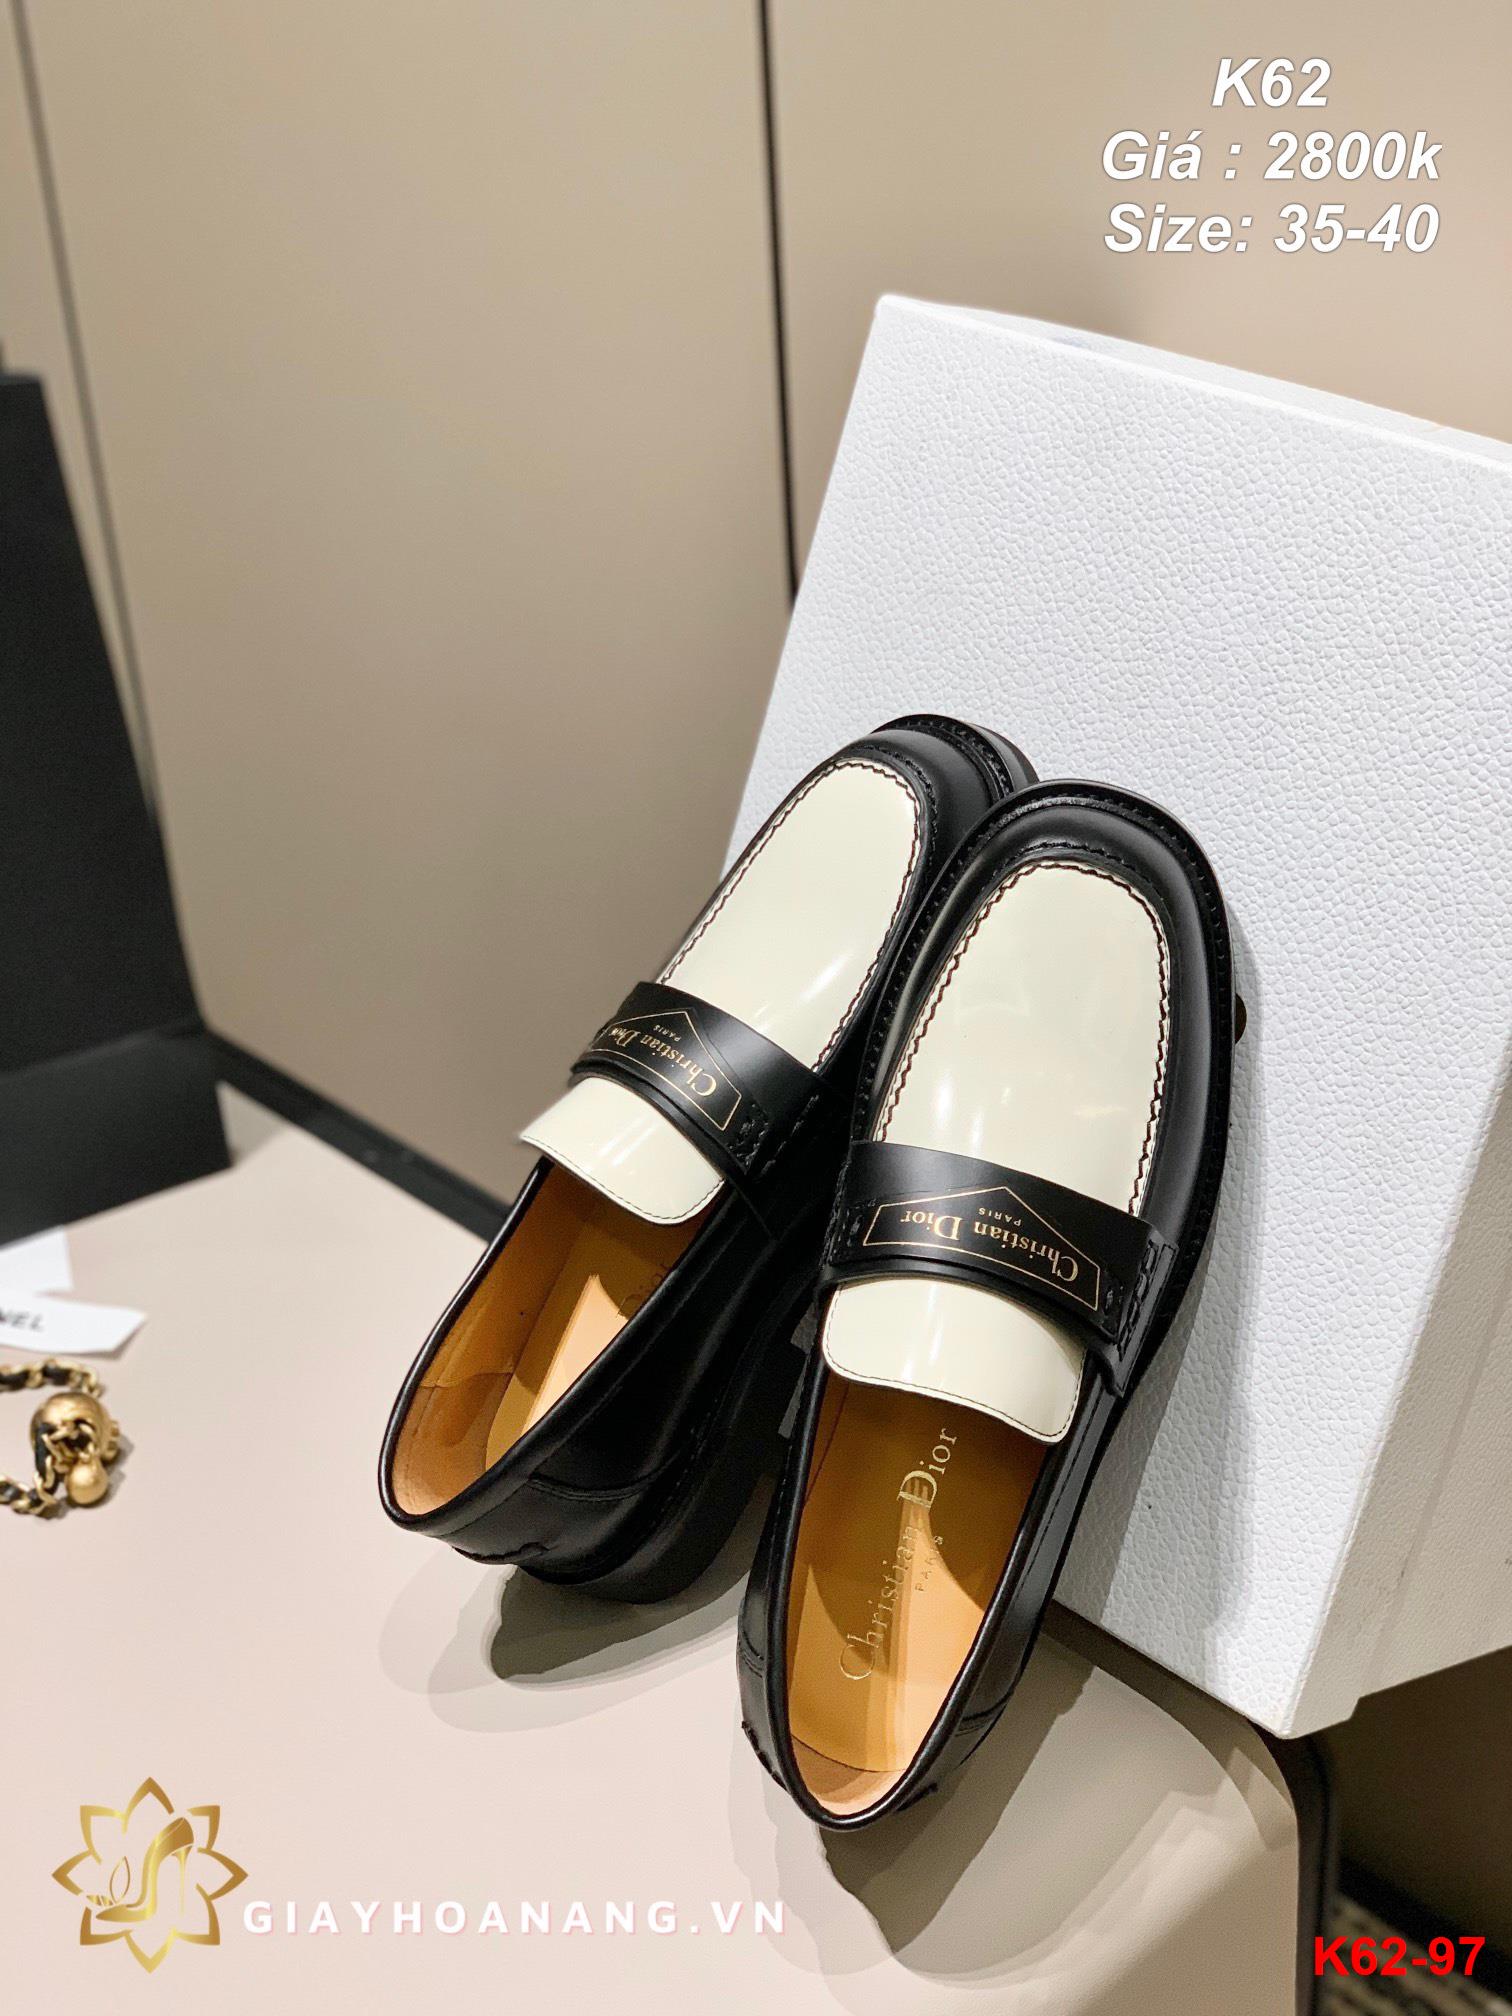 K62-97 Dior giày lười siêu cấp